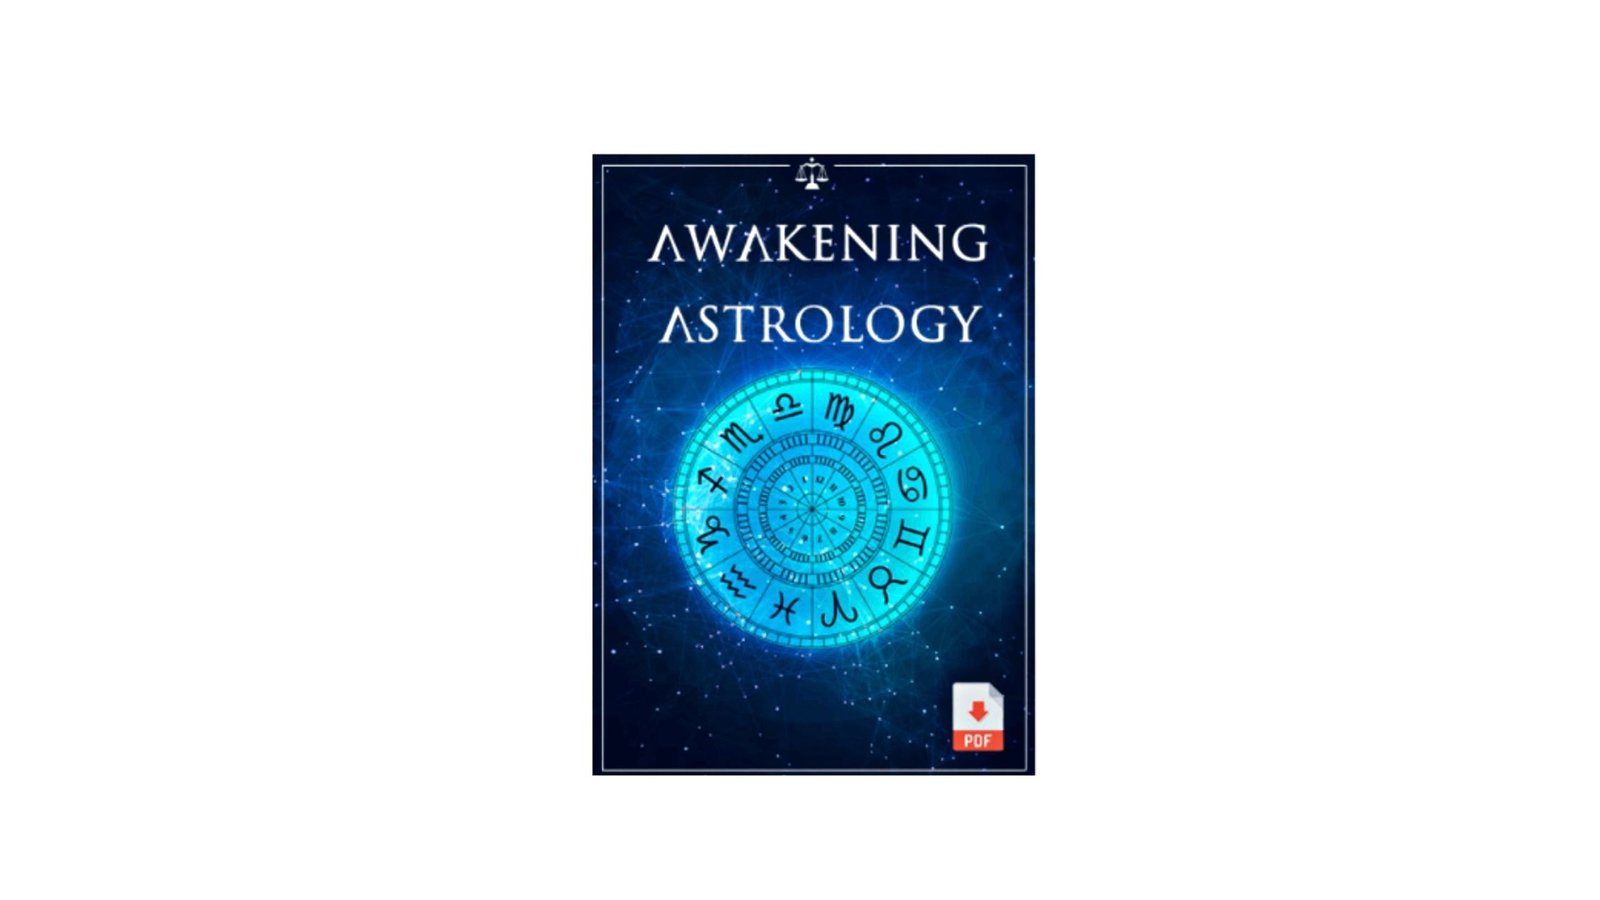 Awakening Astrology Reviews